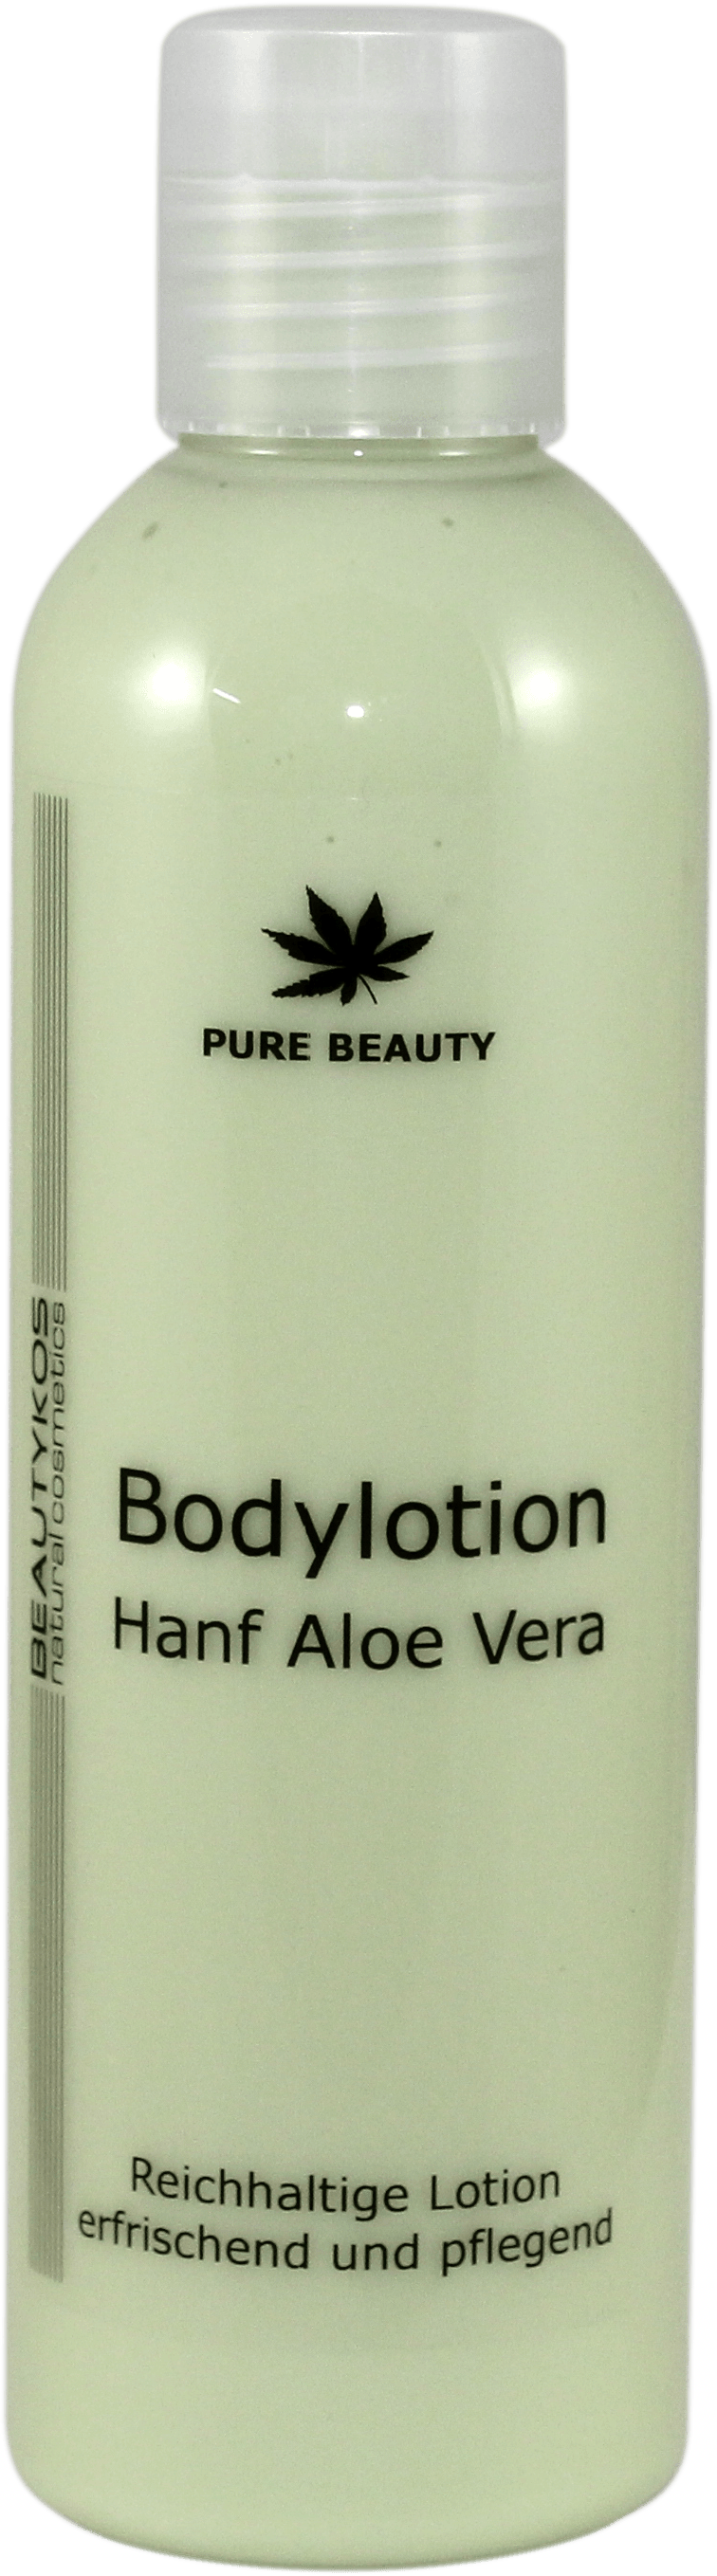 Hanf  Aloe Vera Bodylotion